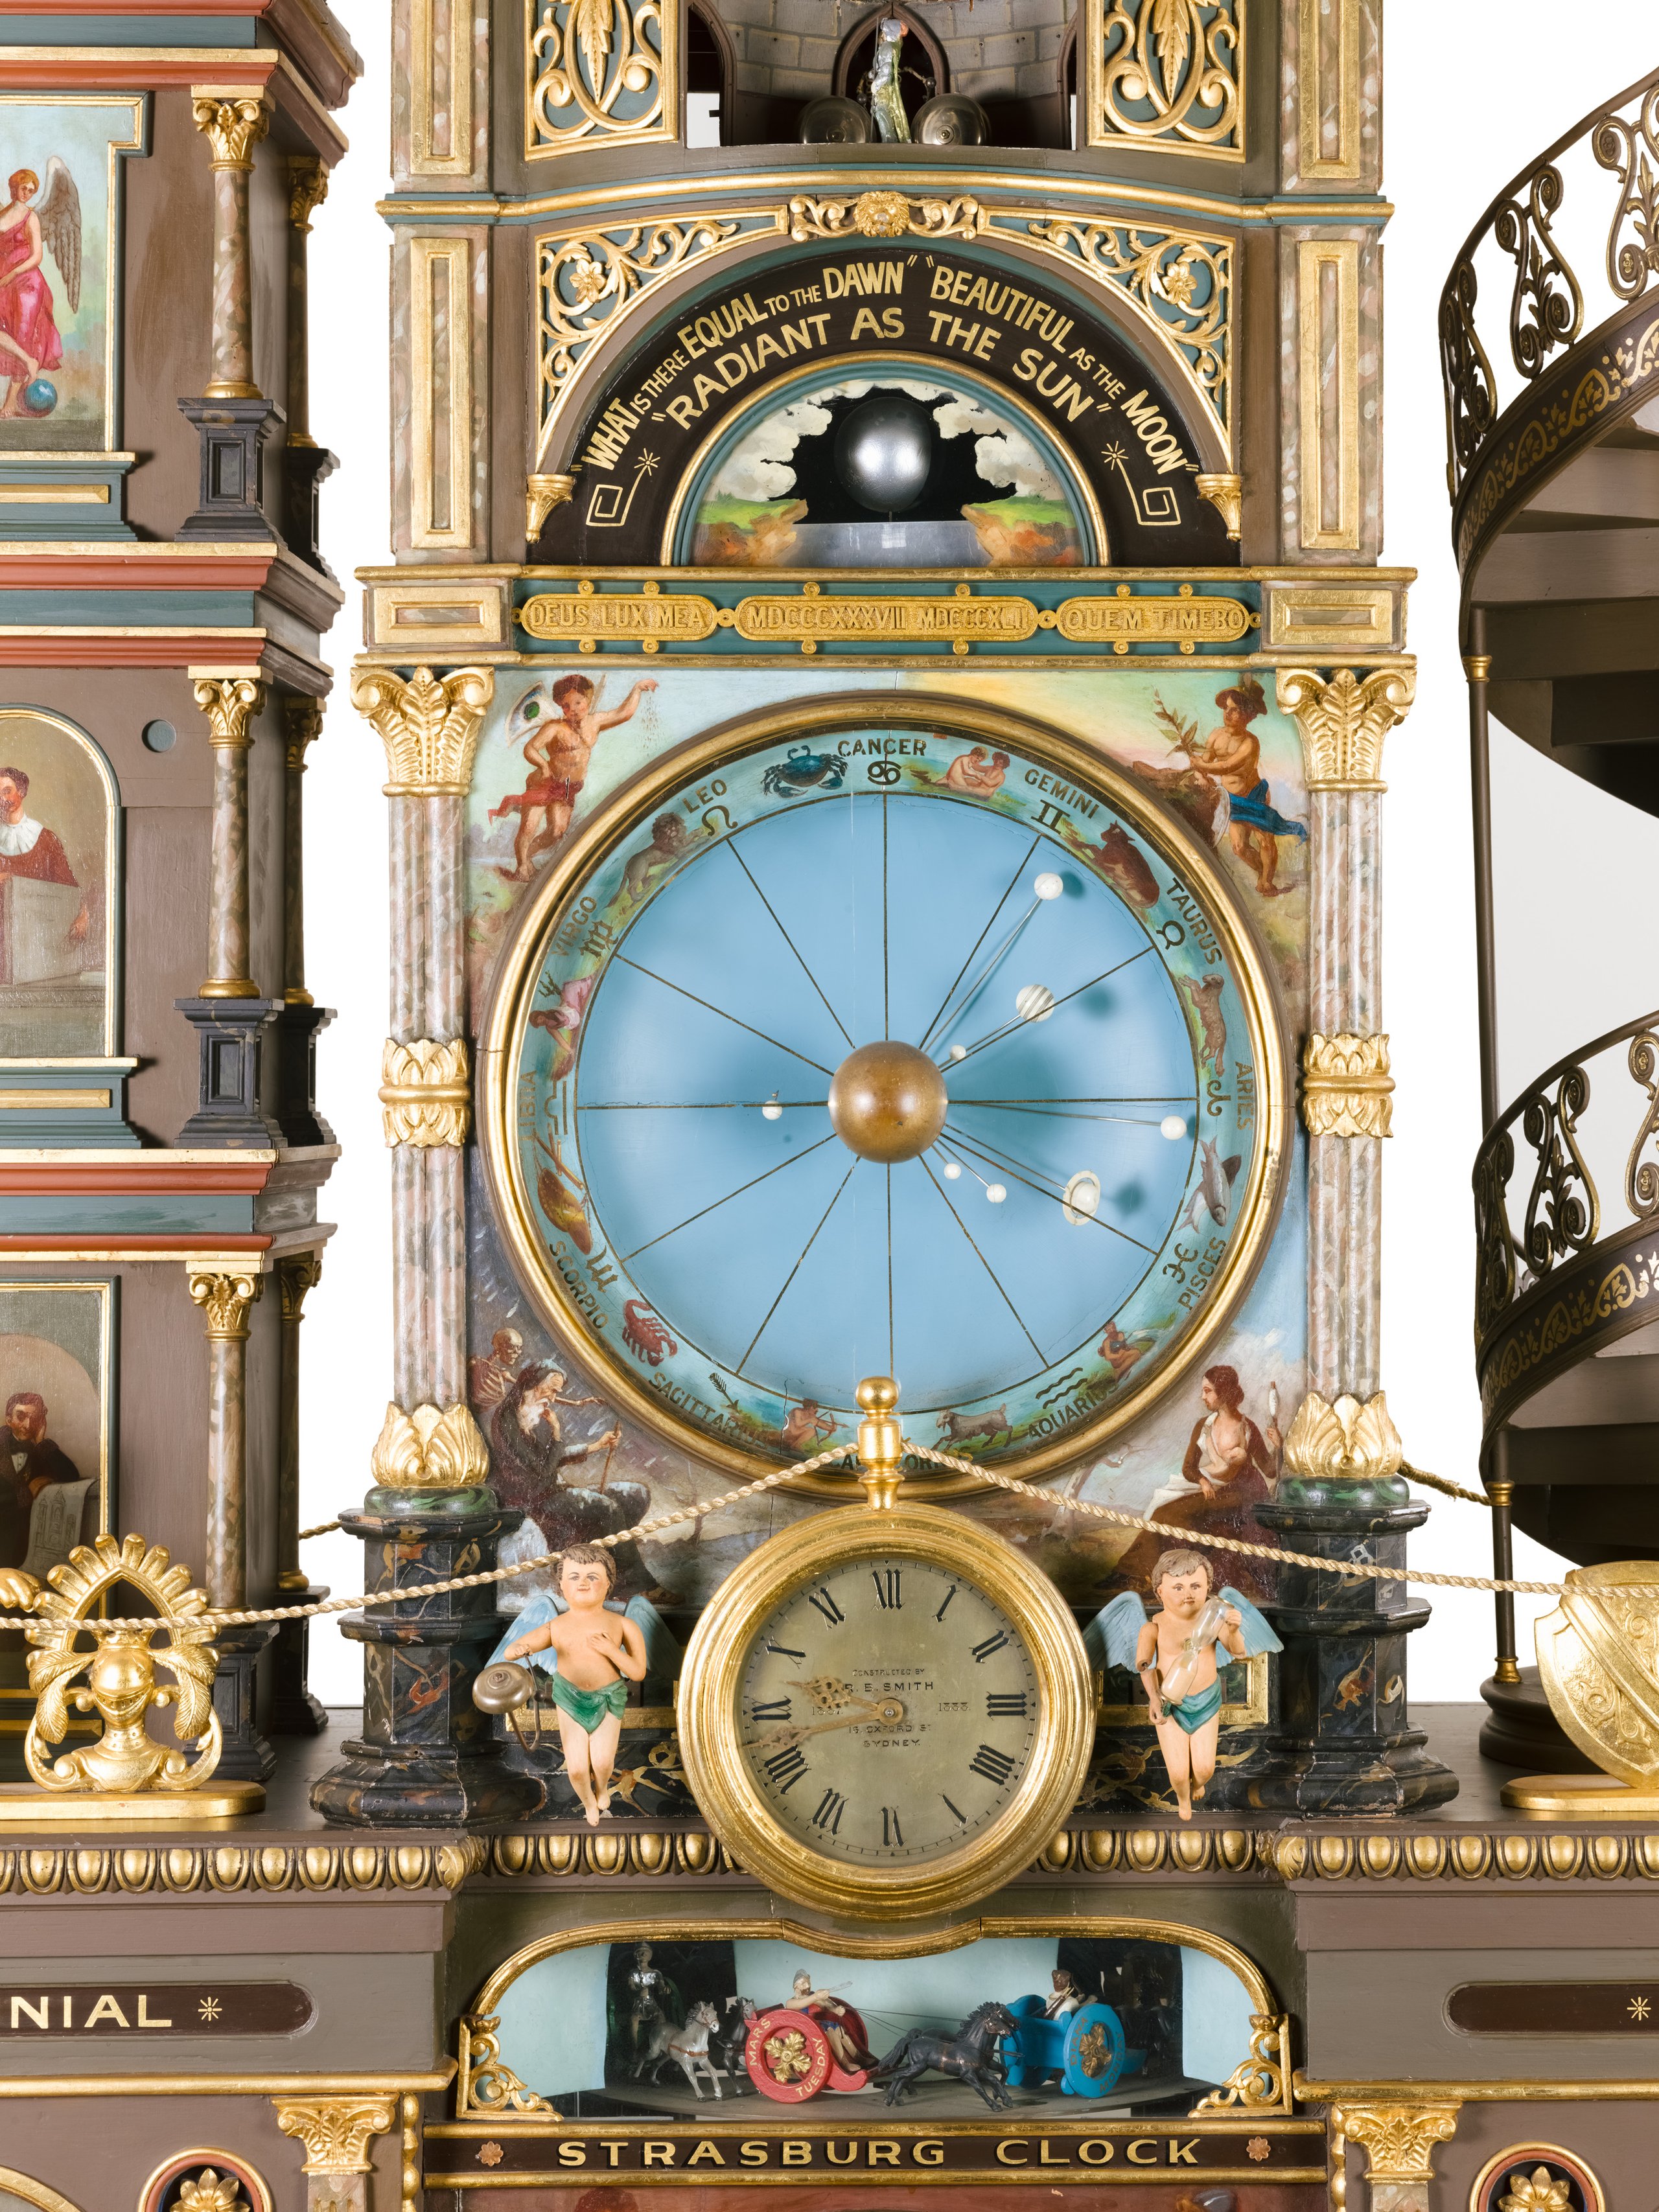 'Strasburg Clock' model by Richard Bartholomew Smith